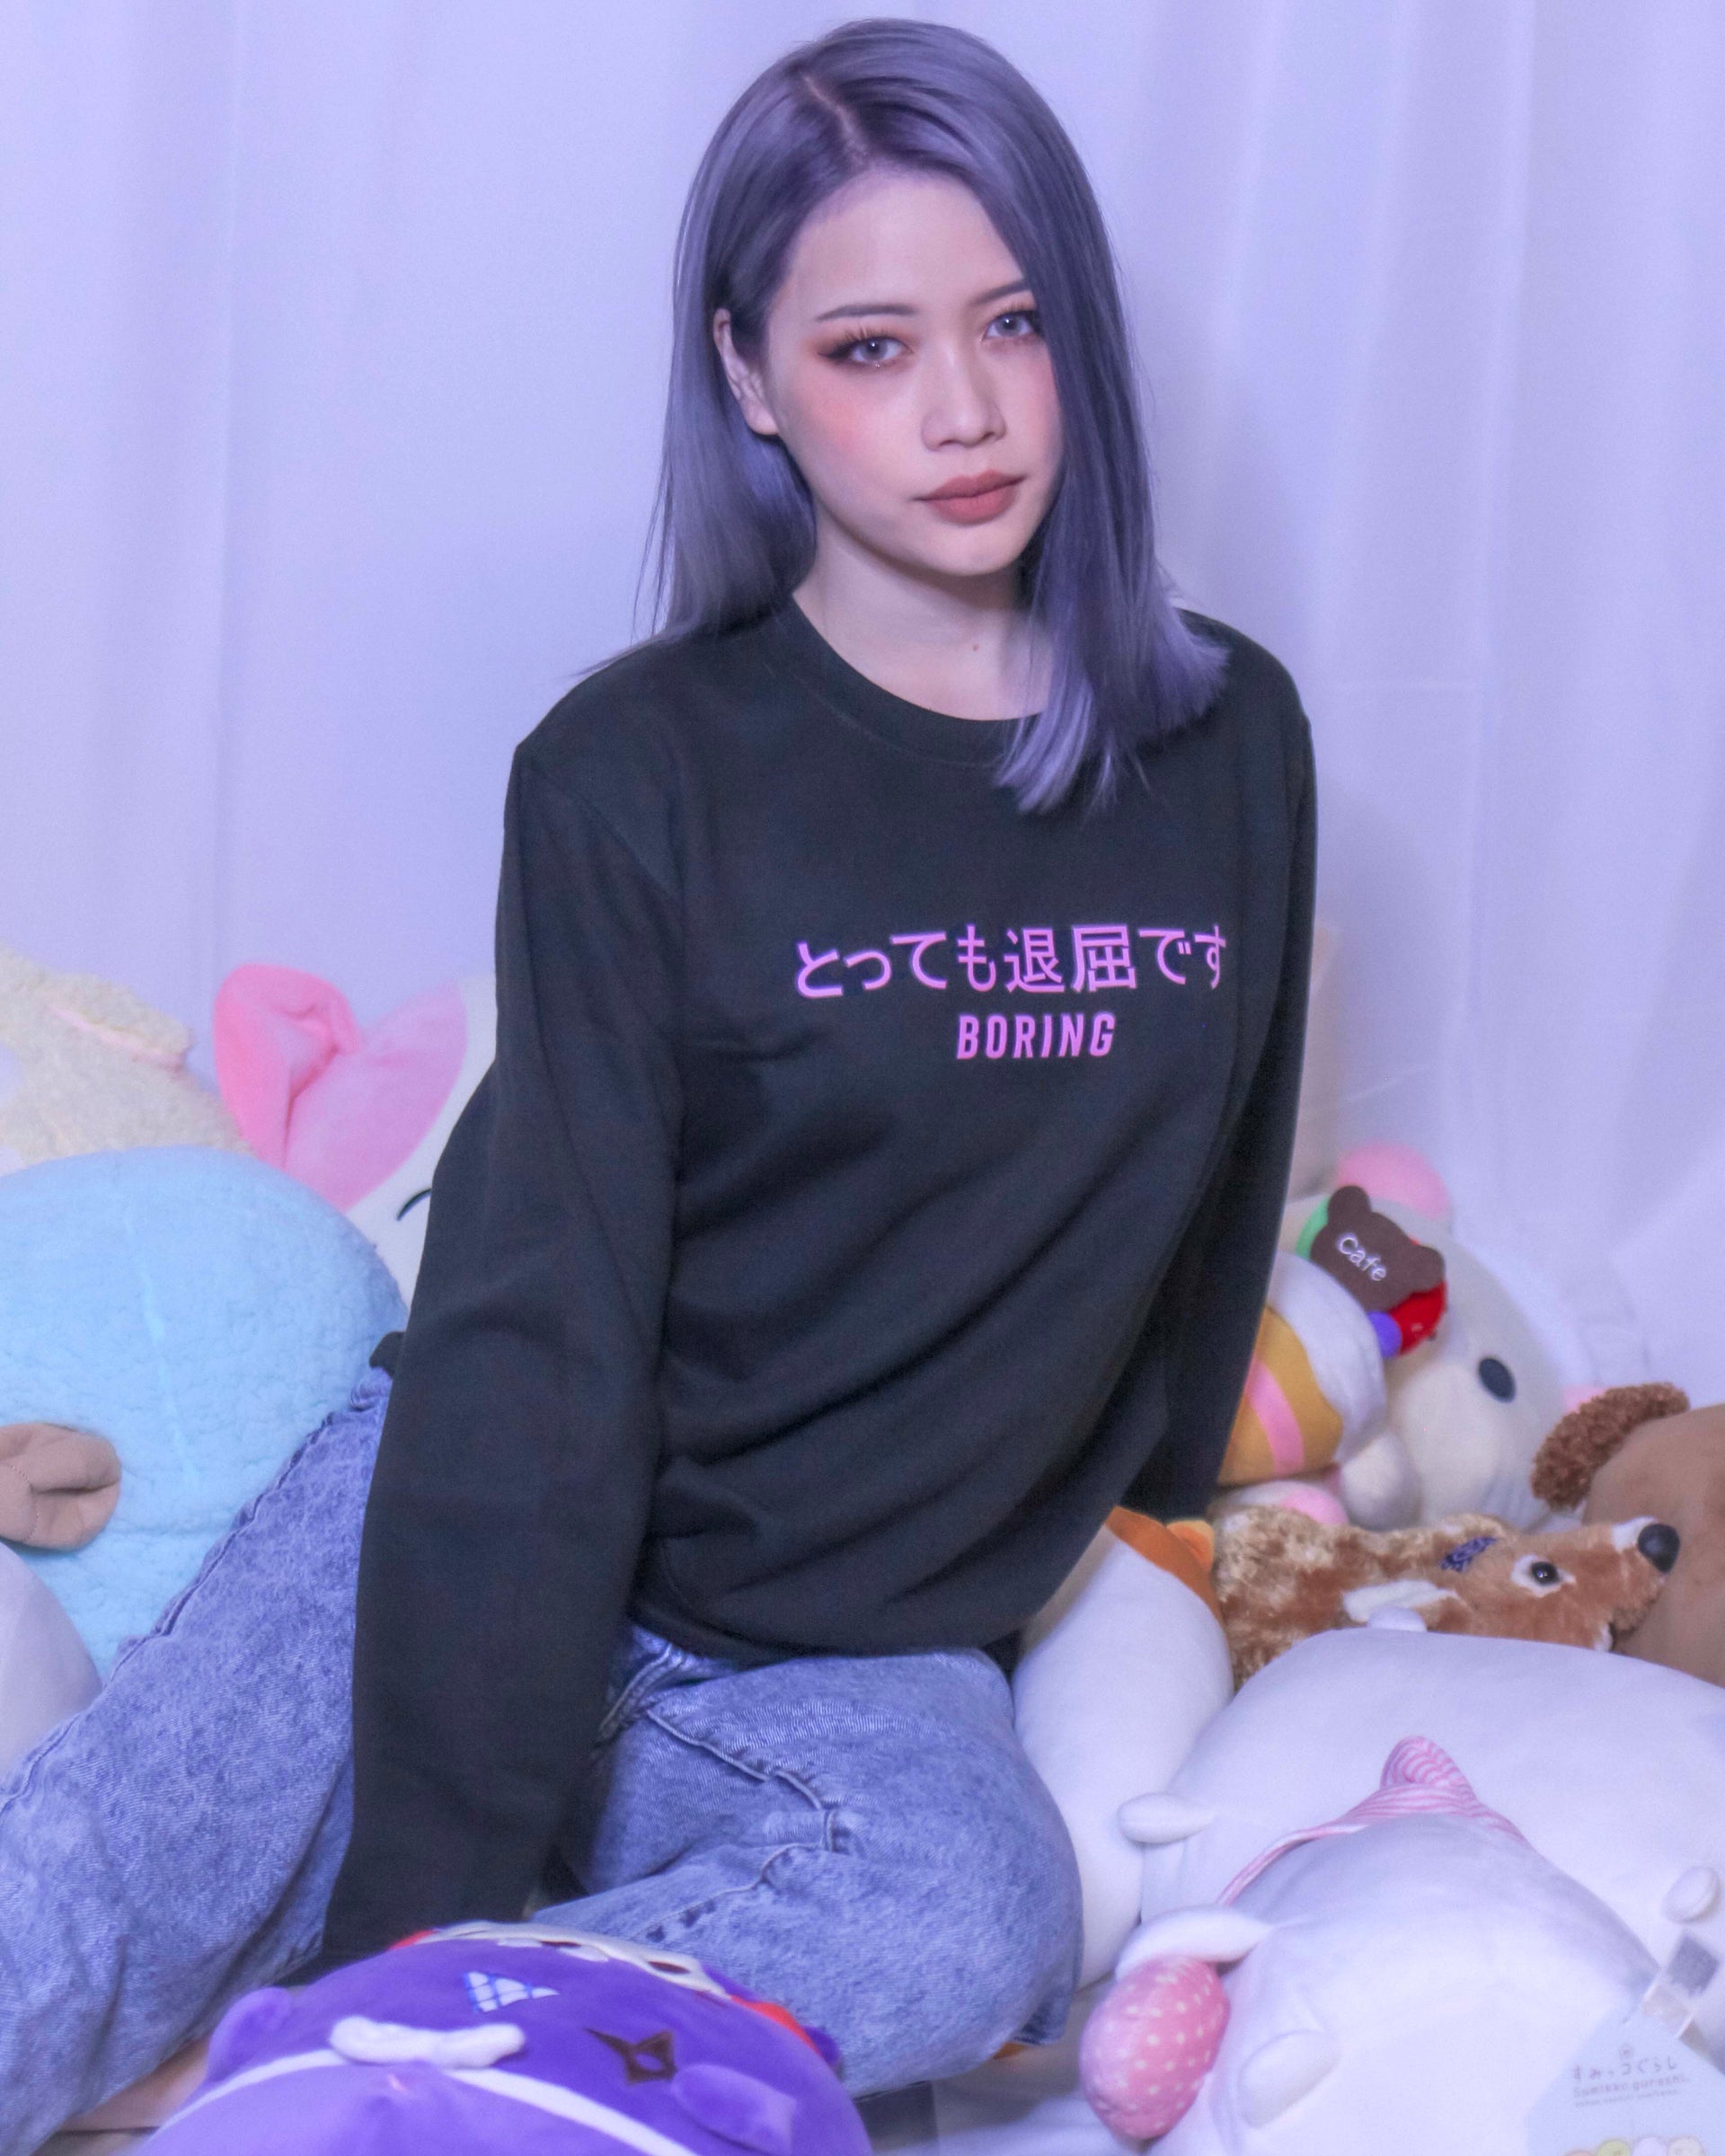 Pink Boring Japanese Sweater - Momokakkoii